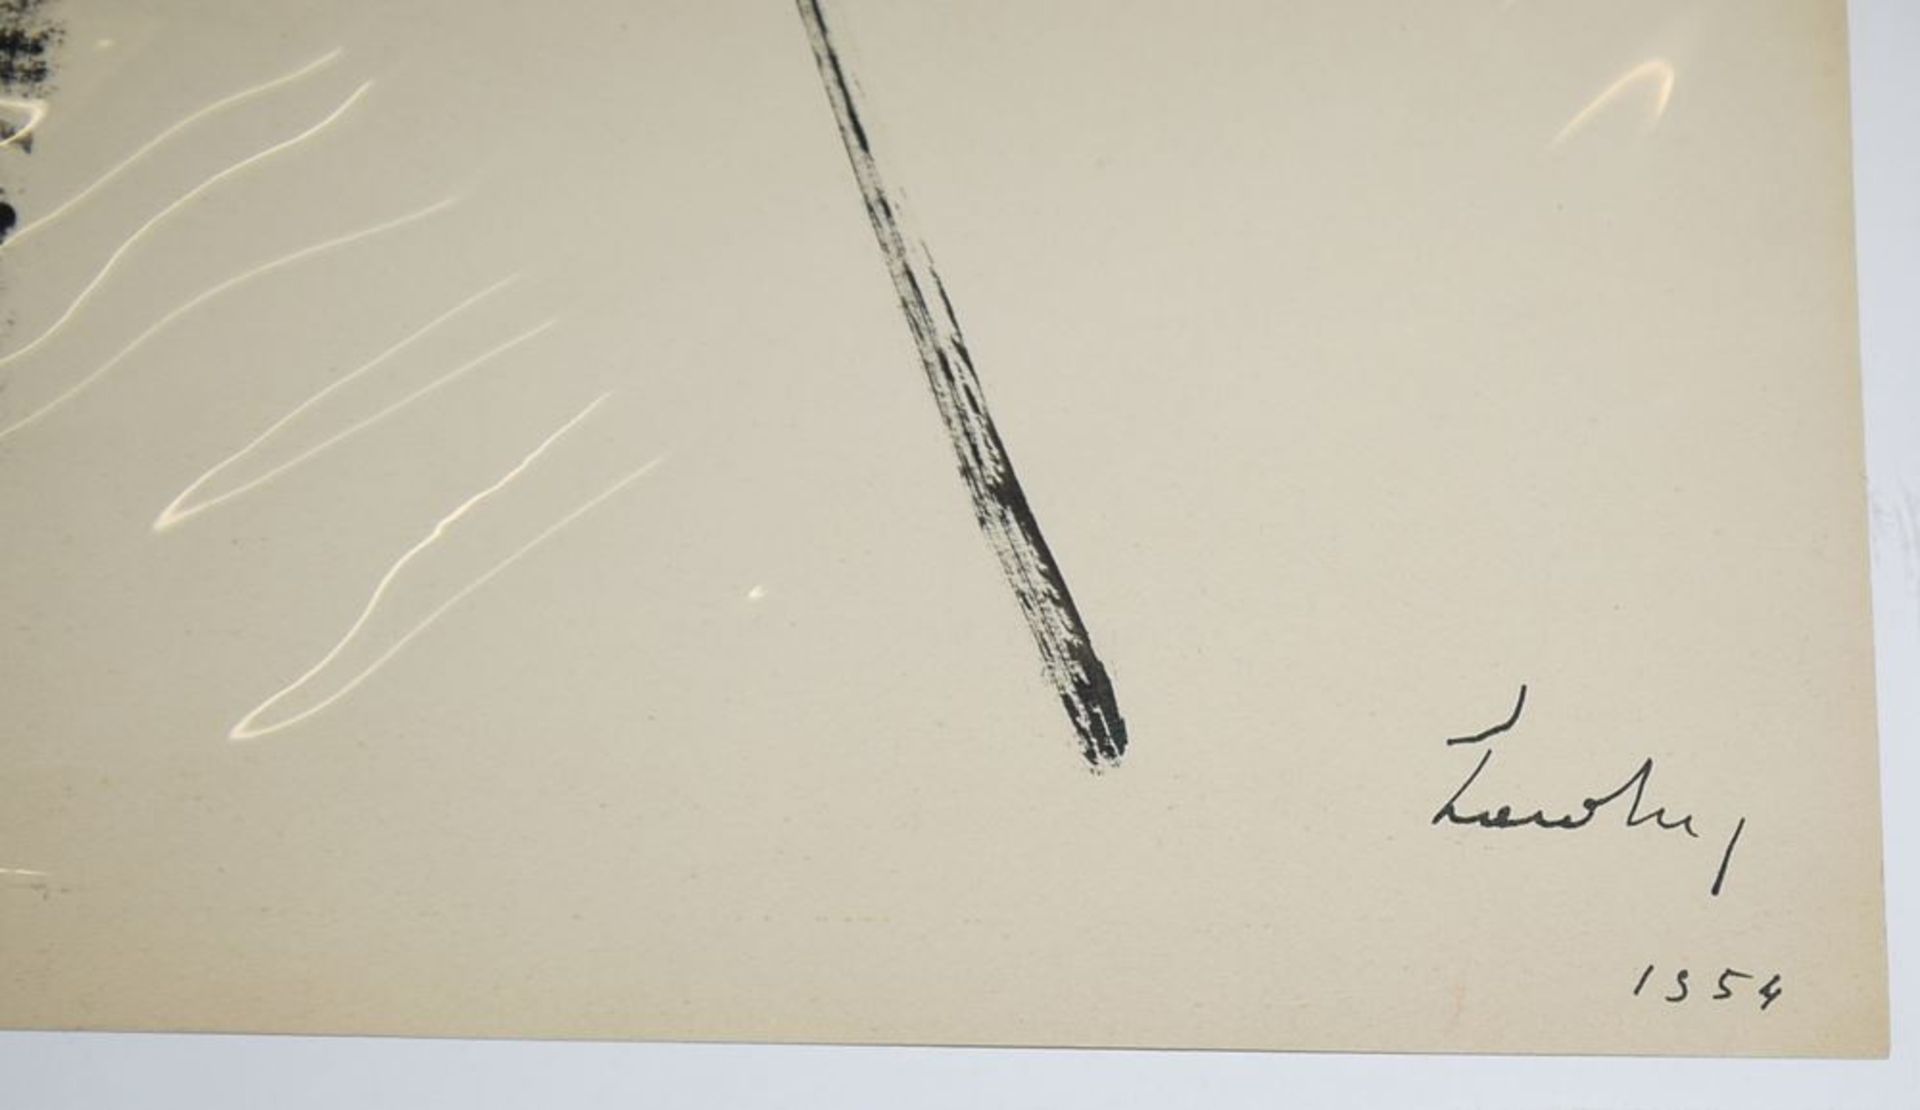 Berto Lardera, Gestisch-informelle Komposition, signierte Mischtechnik von 1954 - Bild 2 aus 2